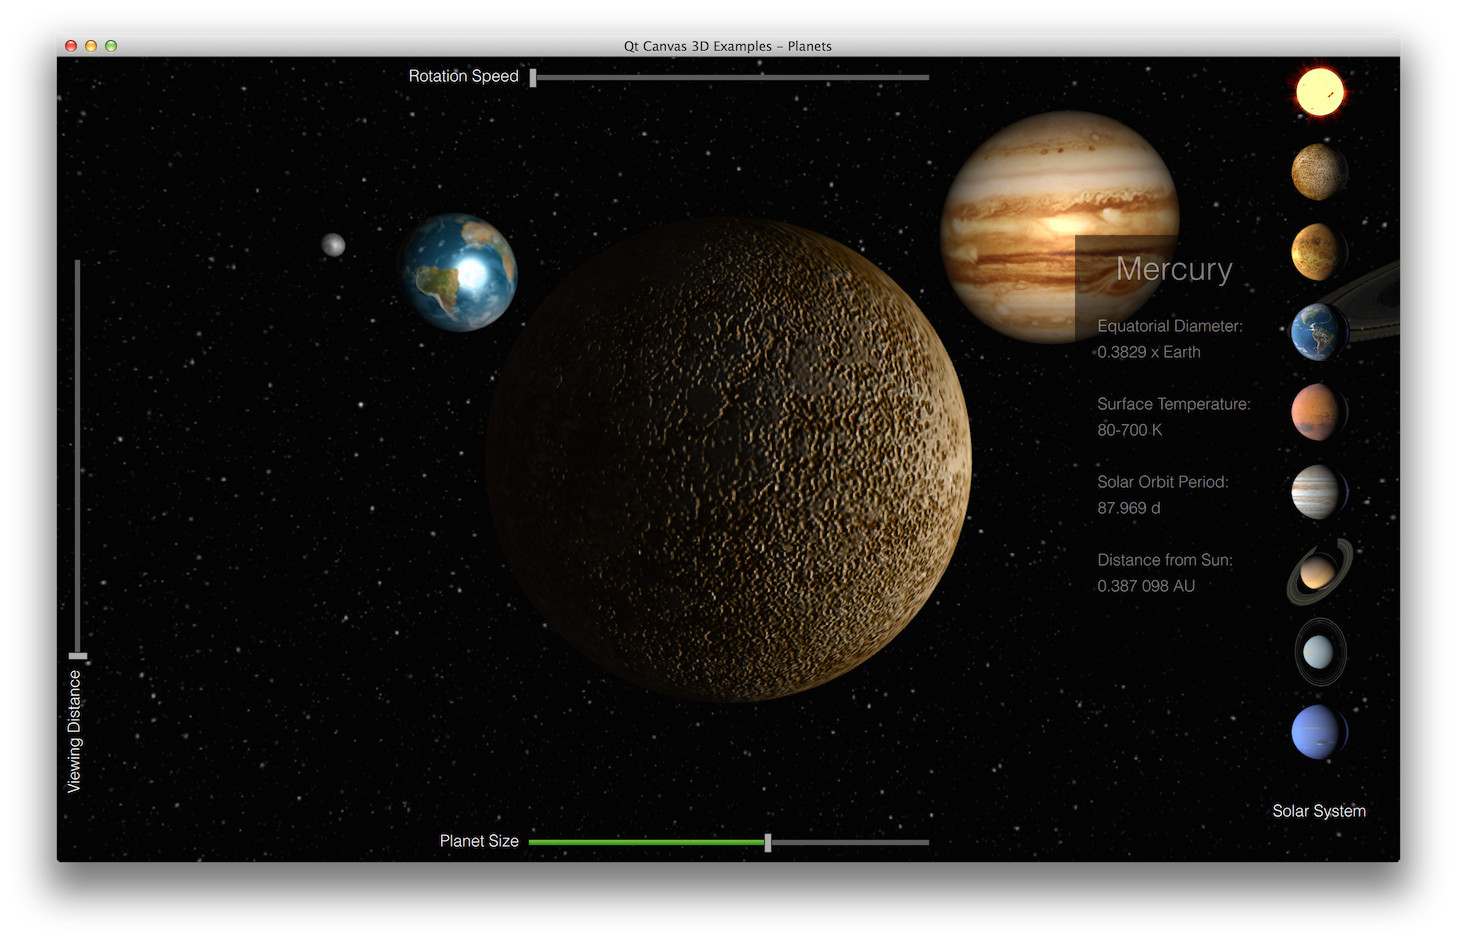 Planets Example | Qt Canvas 3D 